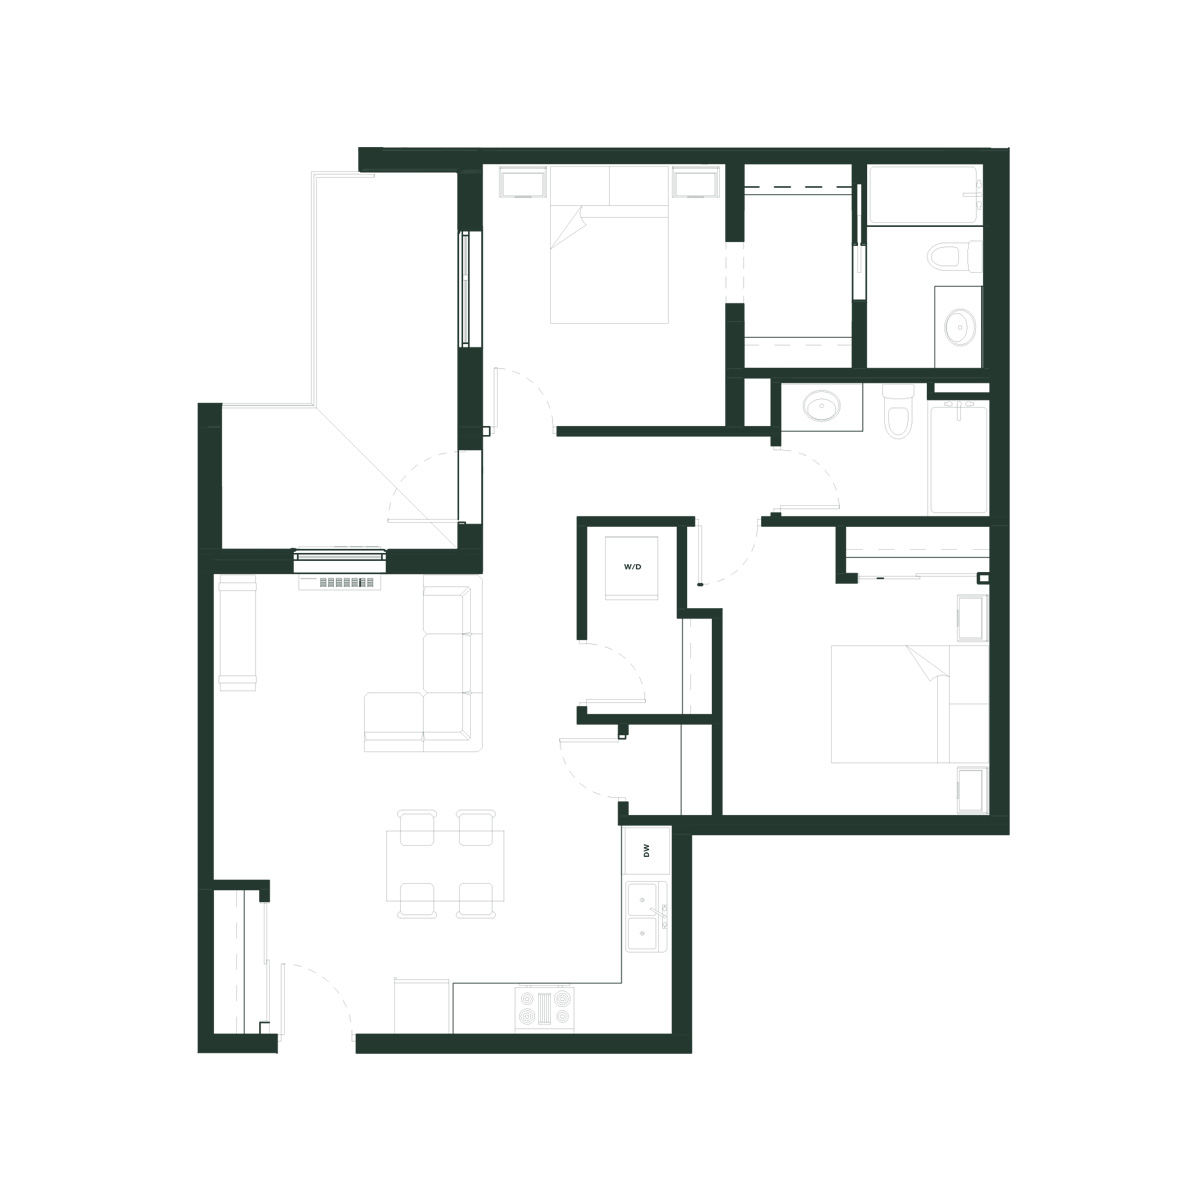 "Petunia" - 997 sq ft Apartment in Edmonton